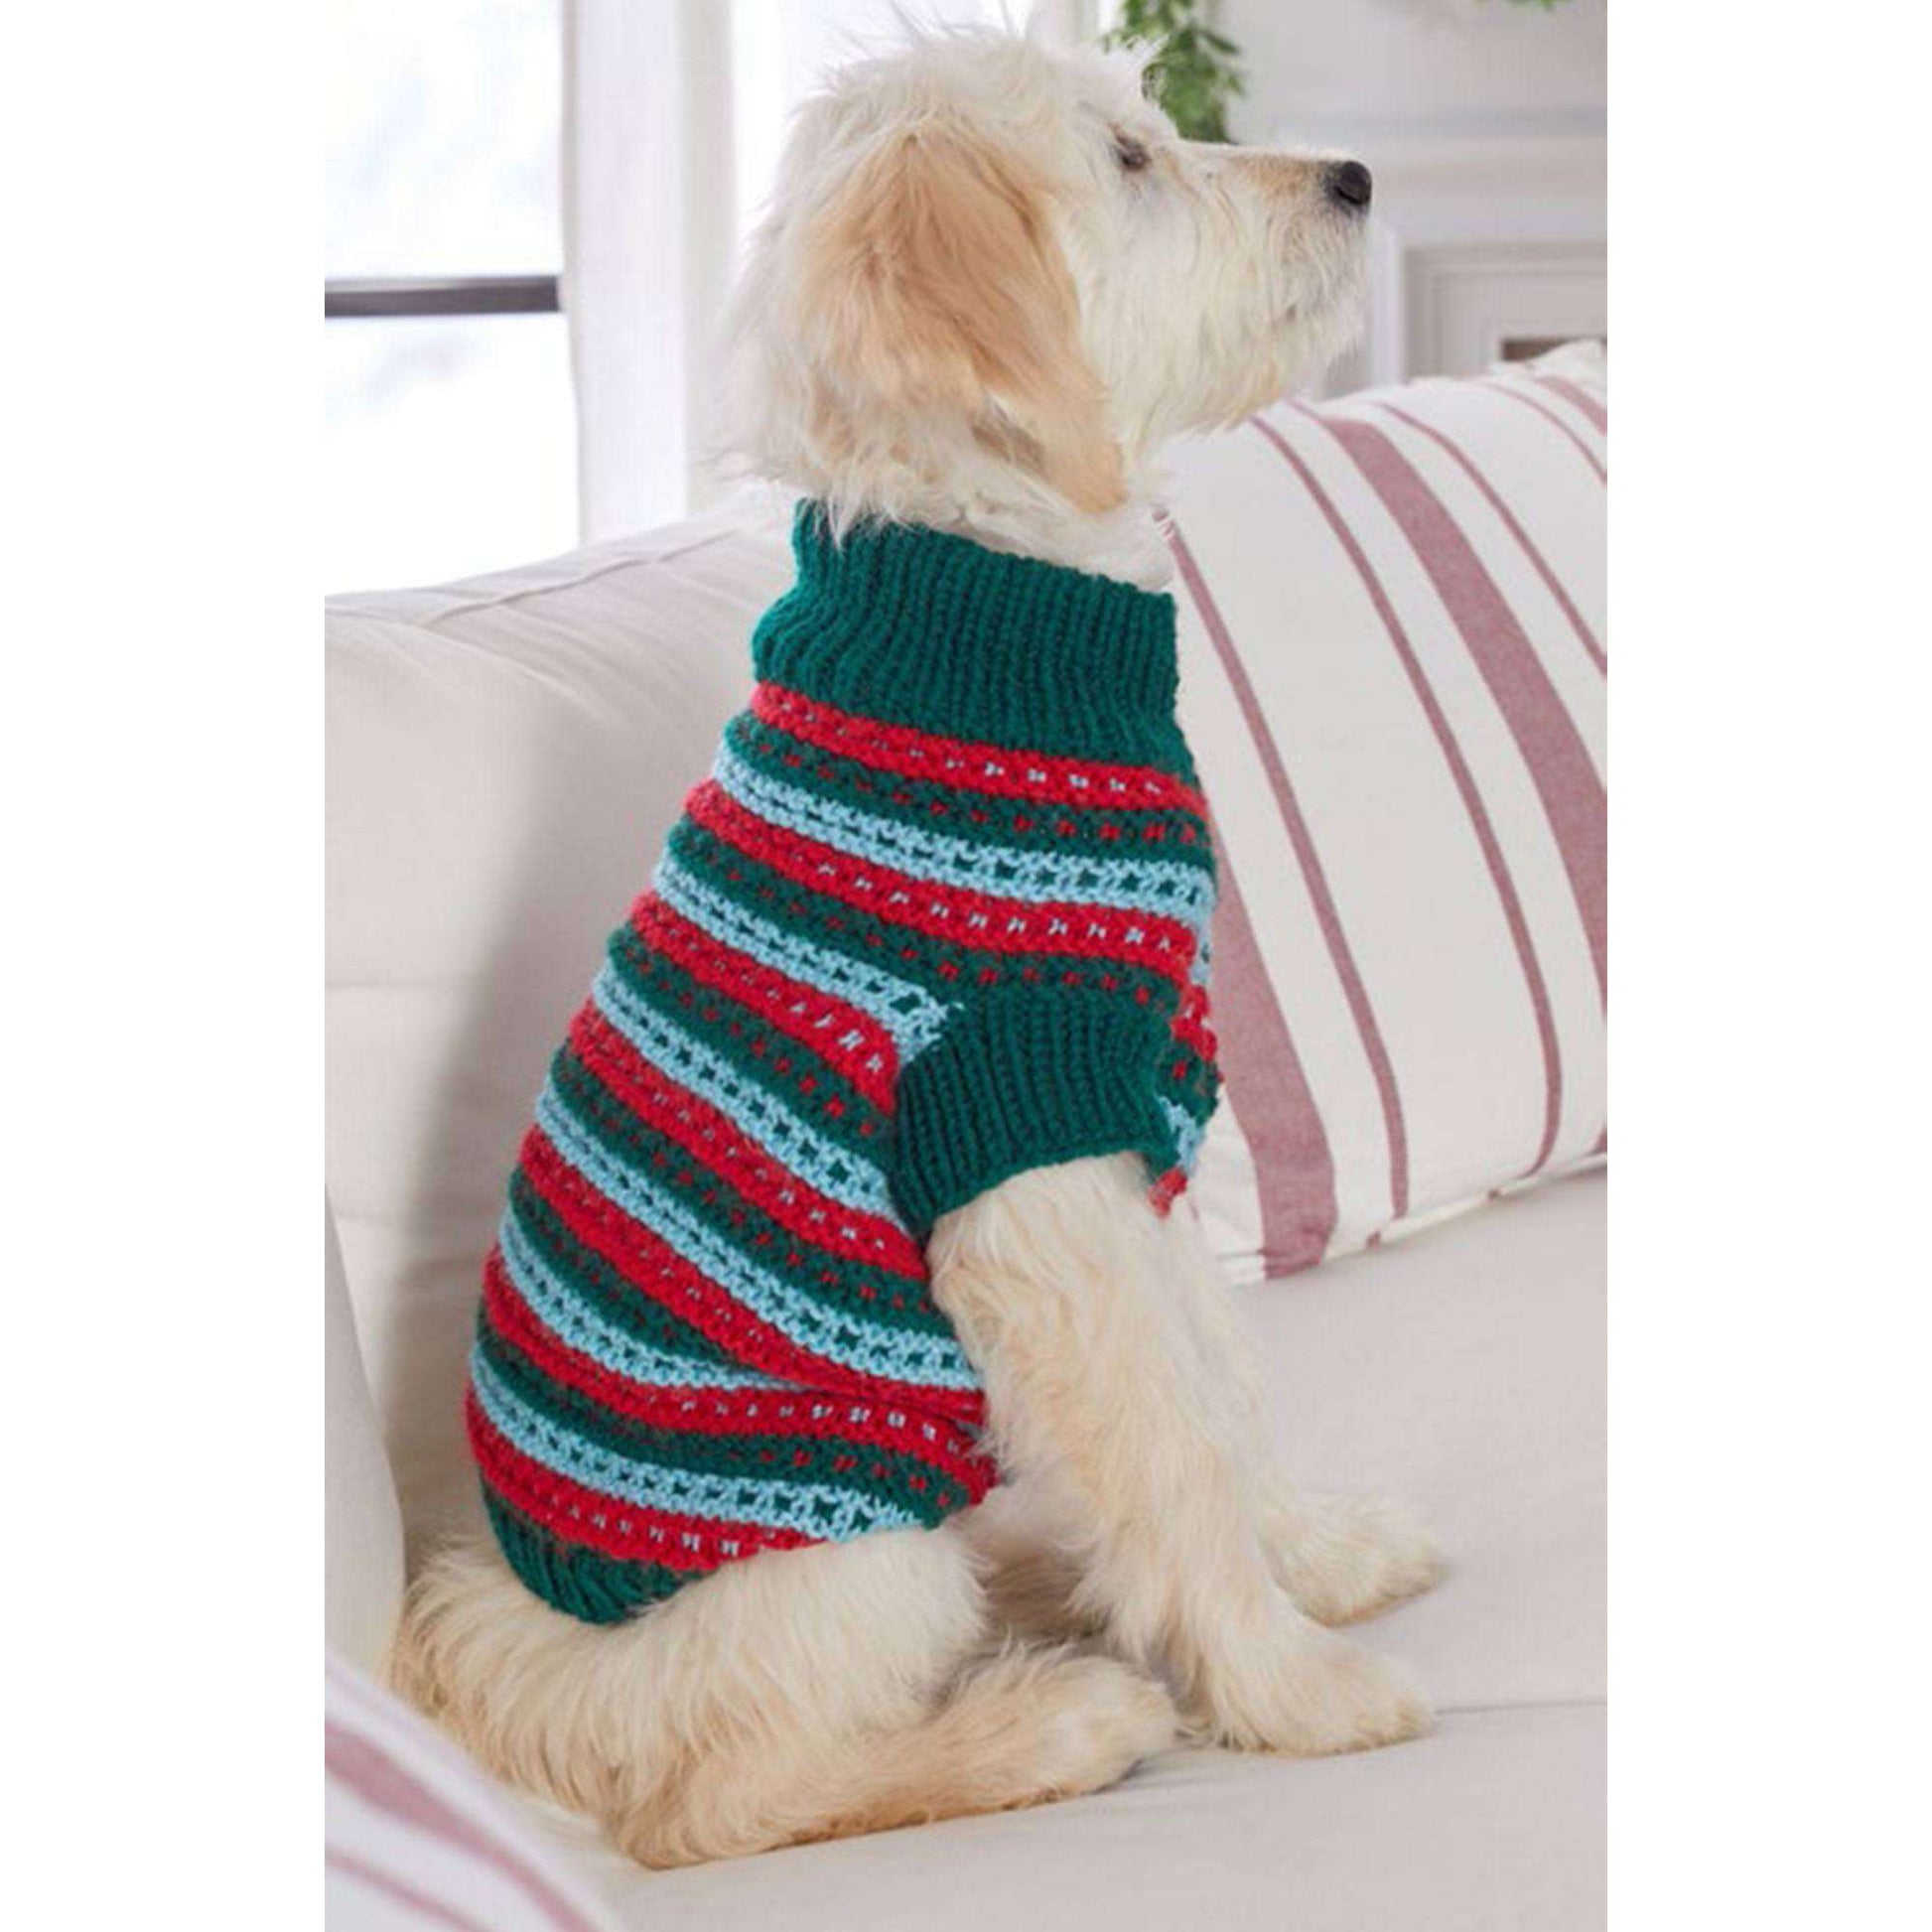 Free Red Heart Stylish Knit Dog Sweater Pattern